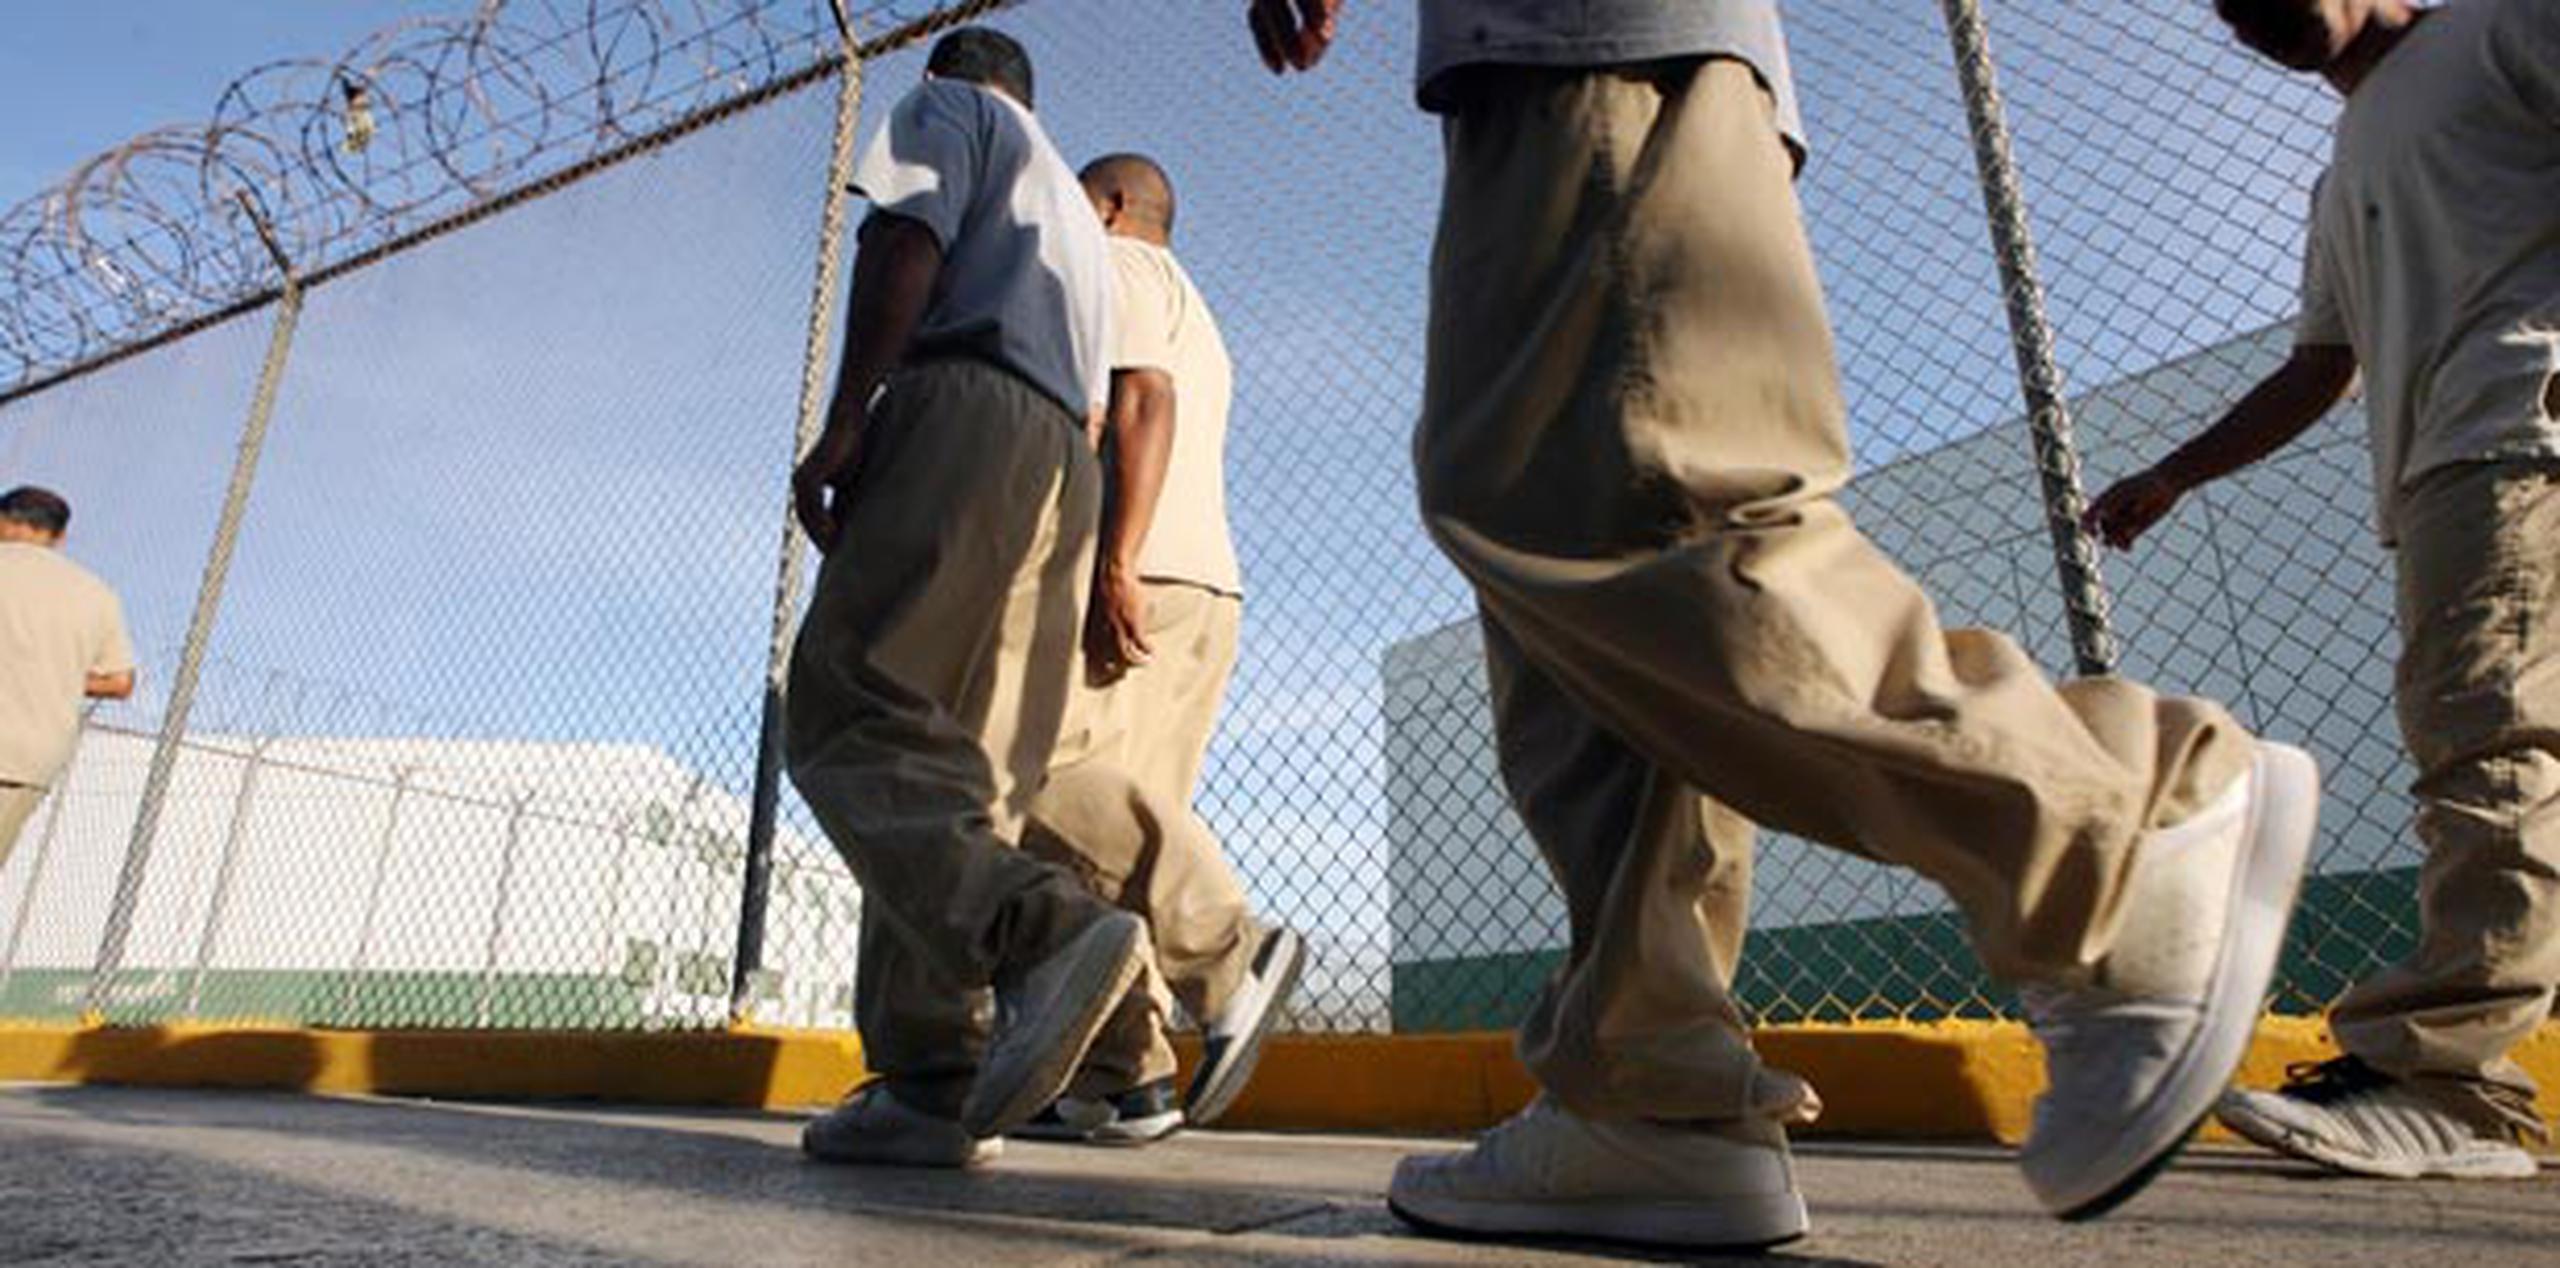 Actualmente hay unos 12,500 confinados adultos, un poco menos de 400 juveniles y aproximadamente 8 mil personas que están cumpliendo sus sentencias en la libre comunidad. (Archivo)